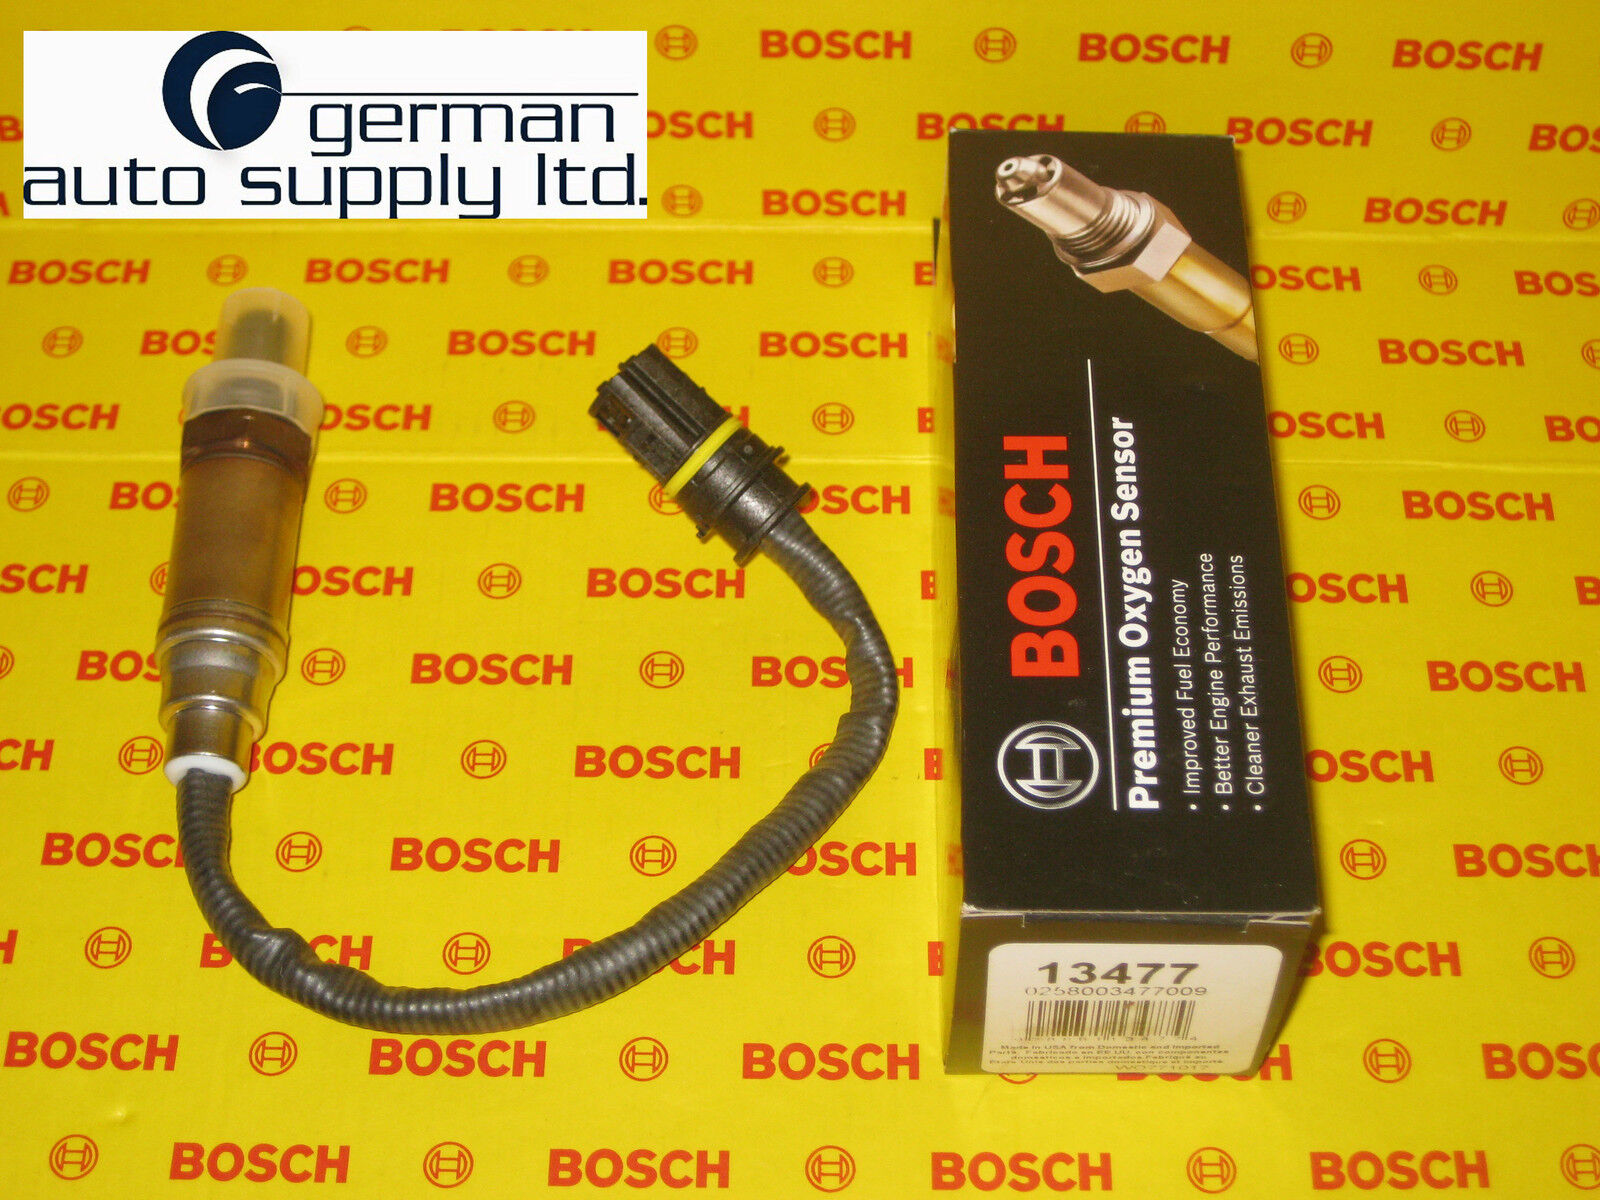 BMW Oxygen Sensor - BOSCH - 0258003477 / 13477 - NEW OEM O2 w/ Connector